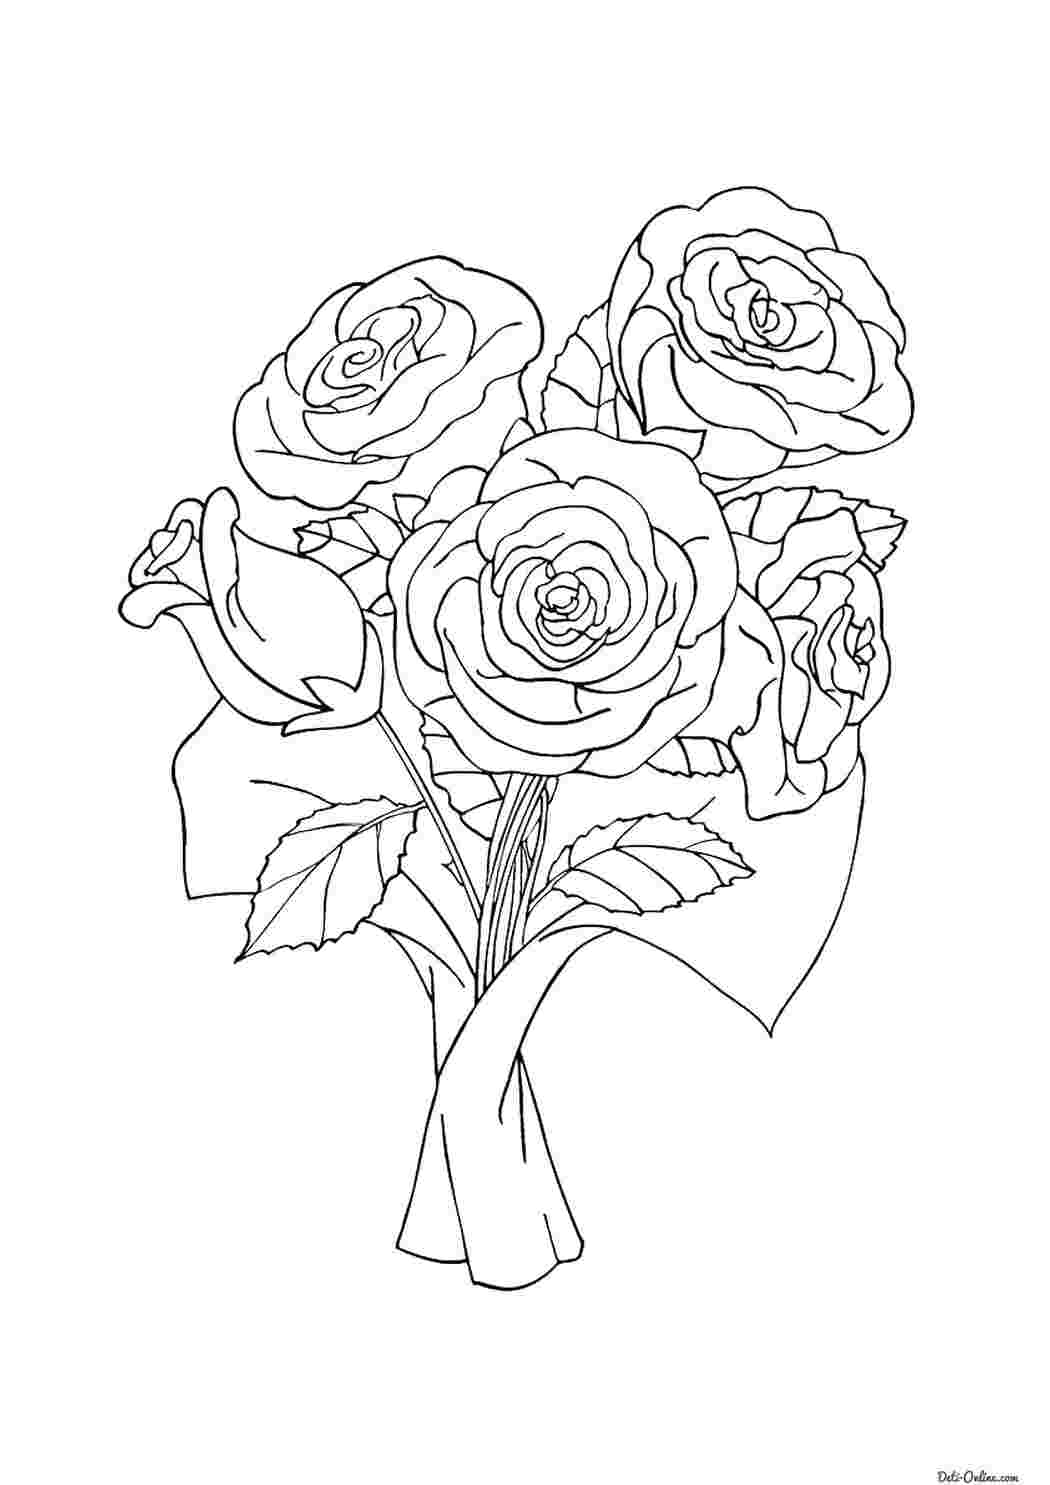 Раскраски Раскраска Розы в подарок цветы цветы